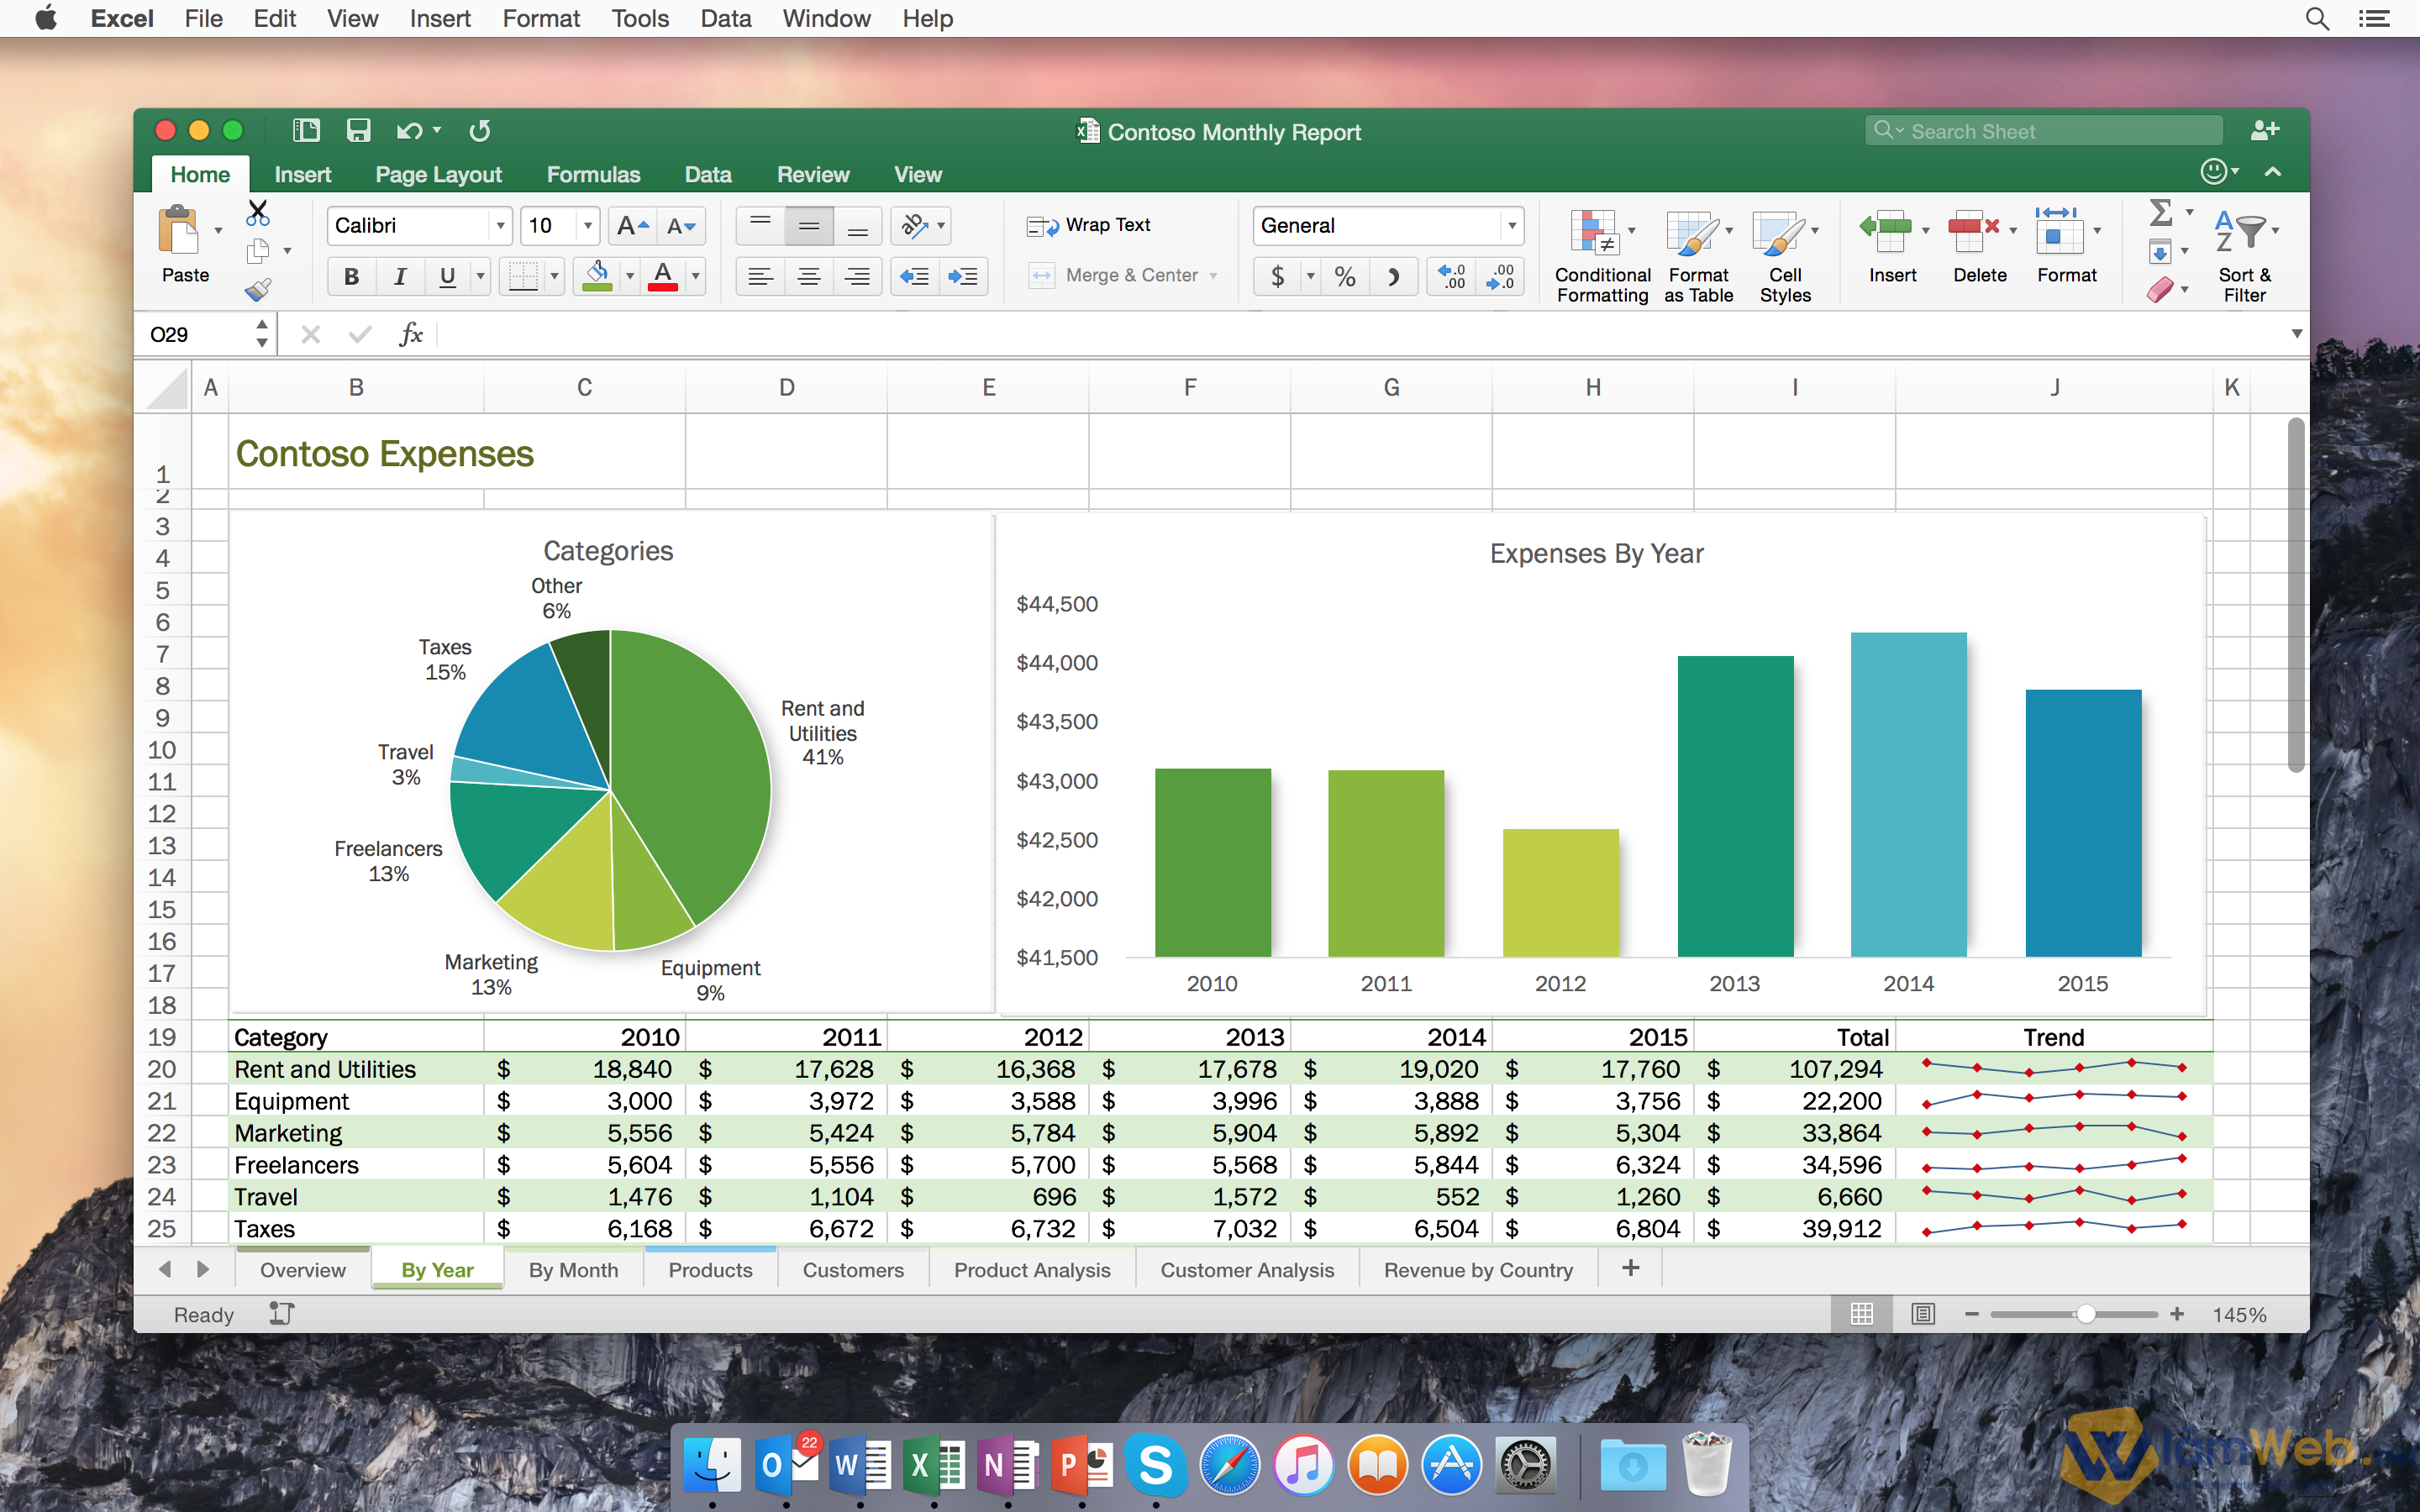 Giao diện màn hình công cụ Excel